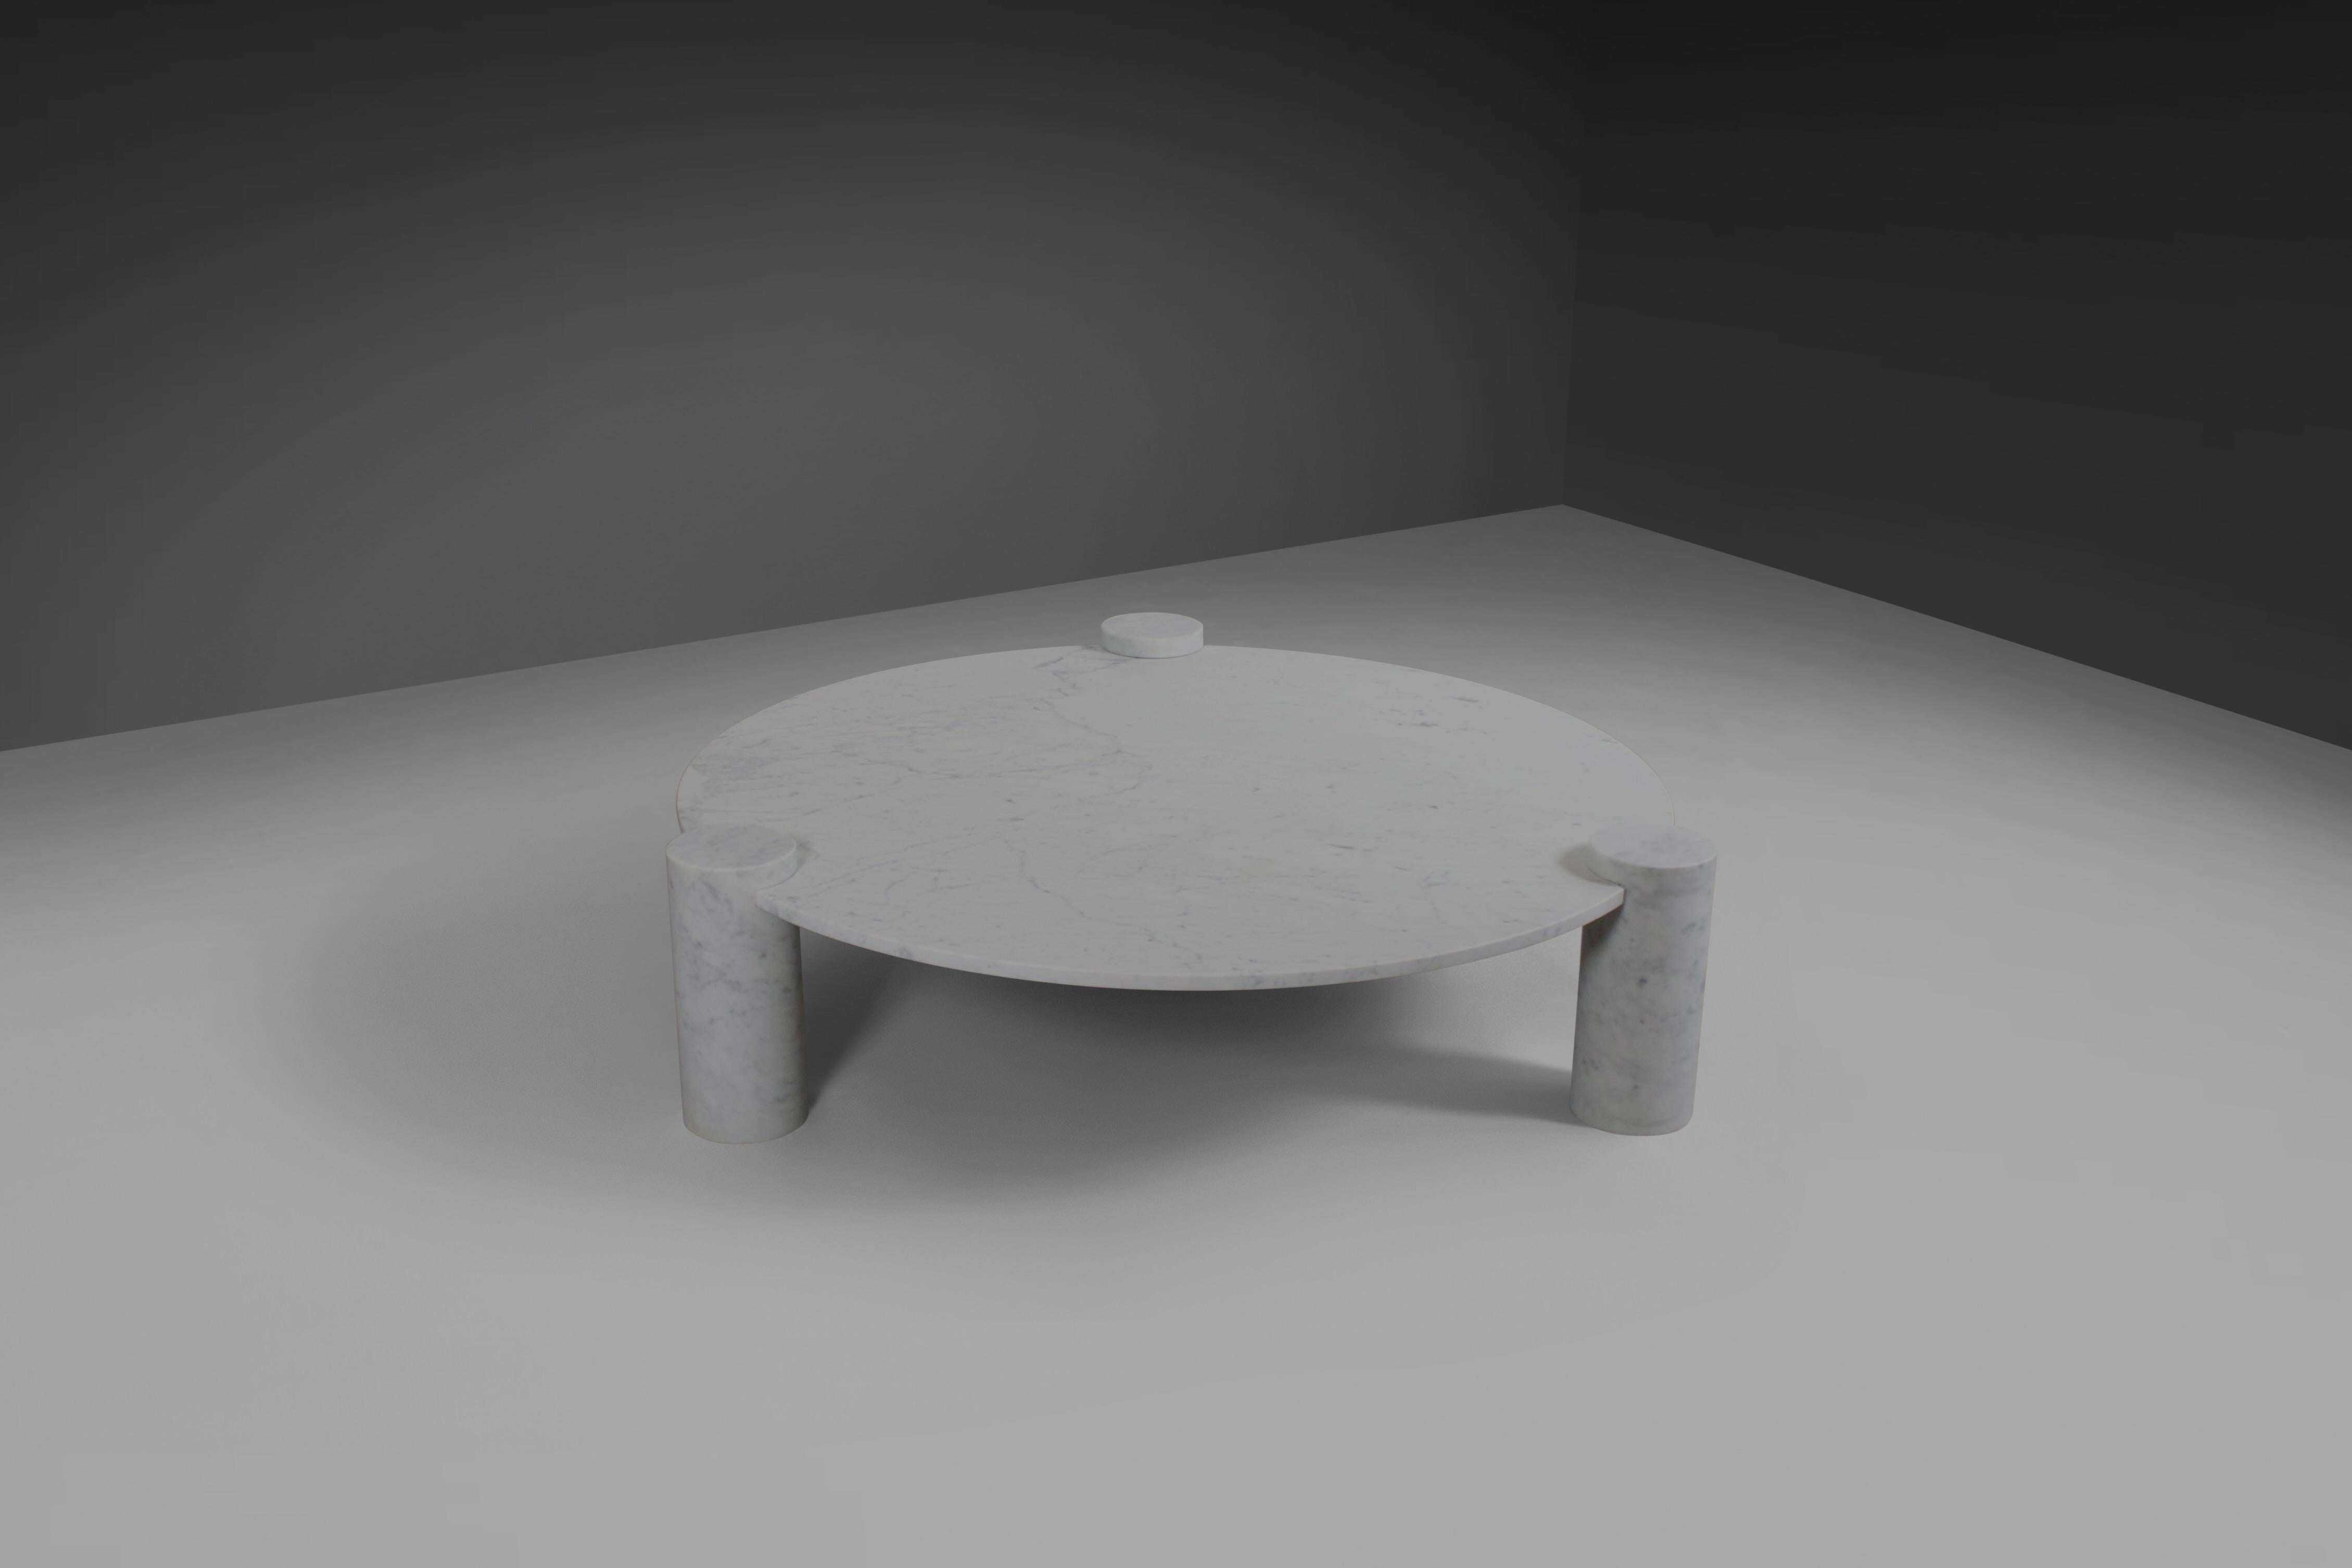 Fantastischer runder Couchtisch in ausgezeichnetem Zustand.

Hergestellt in Italien in den späten 1970er Jahren

Dieser Tisch besteht aus einer weißen Carrara-Marmorplatte und runden Carrara-Marmorfüßen.

Die drei runden, massiven Marmorsockel haben